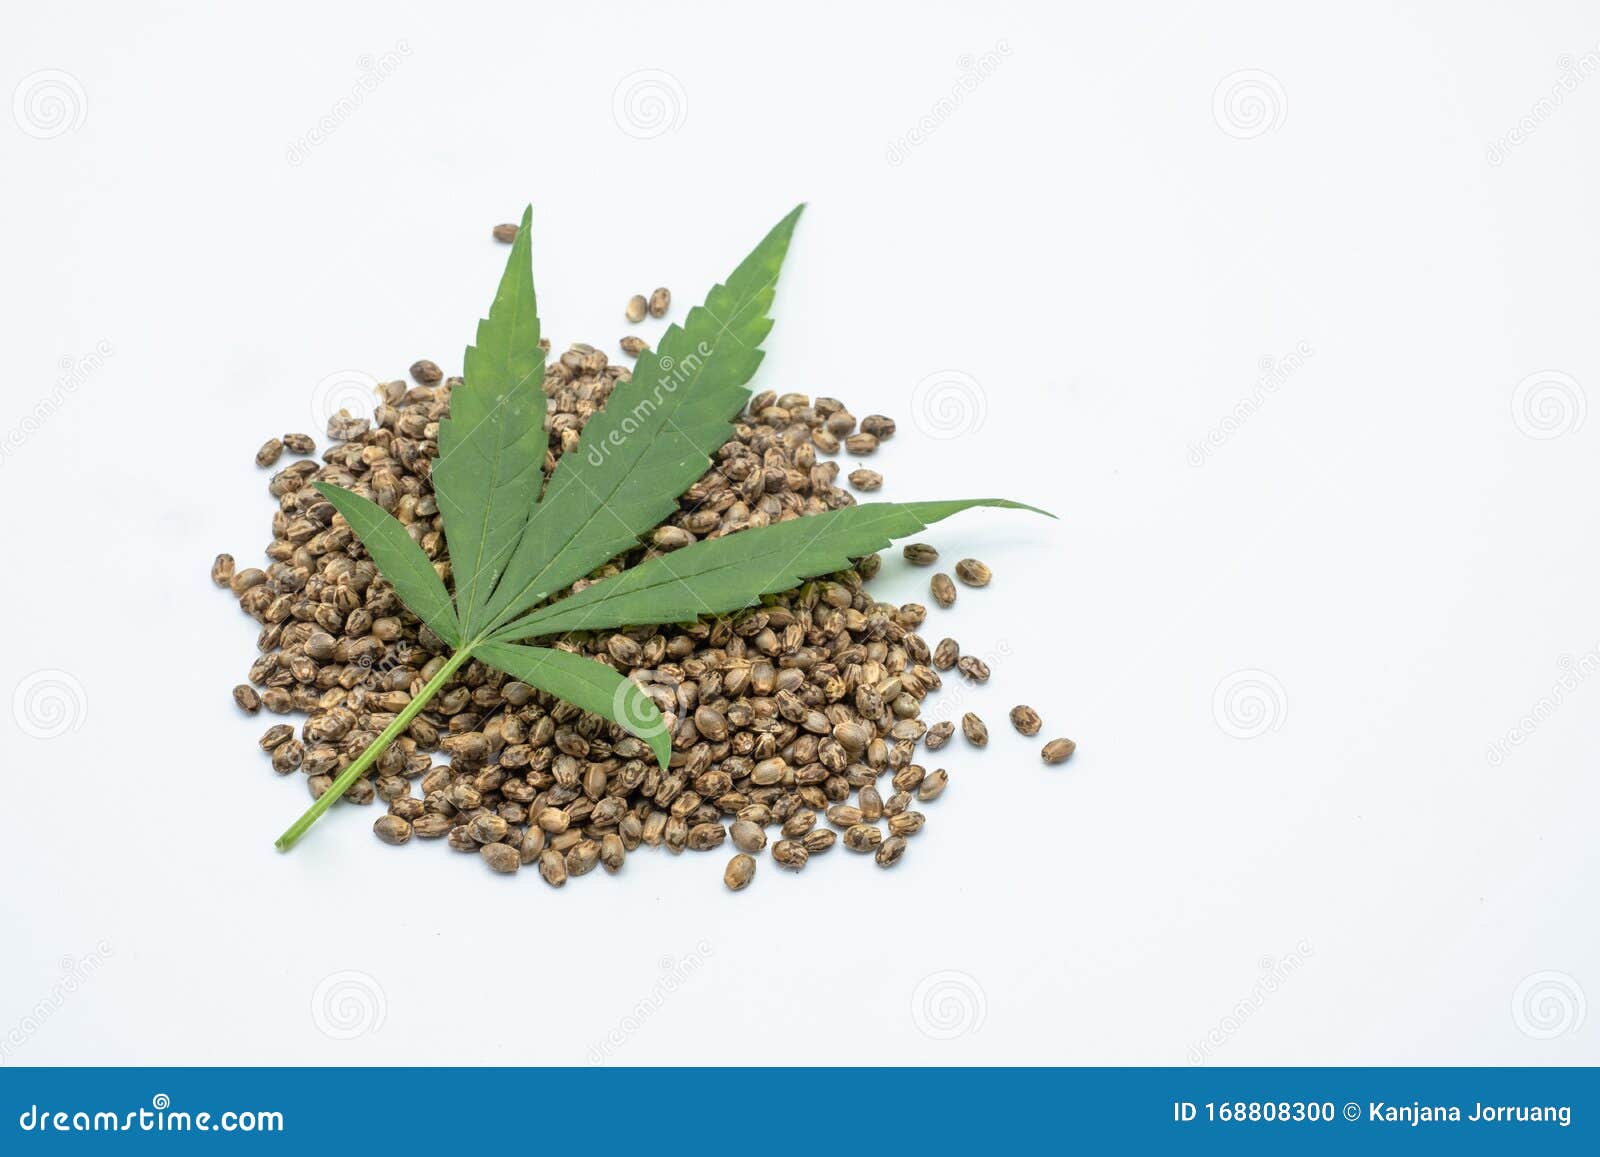 600,000+张最精彩的“大麻种子”图片 · 100%免费下载 · Pexels素材图片